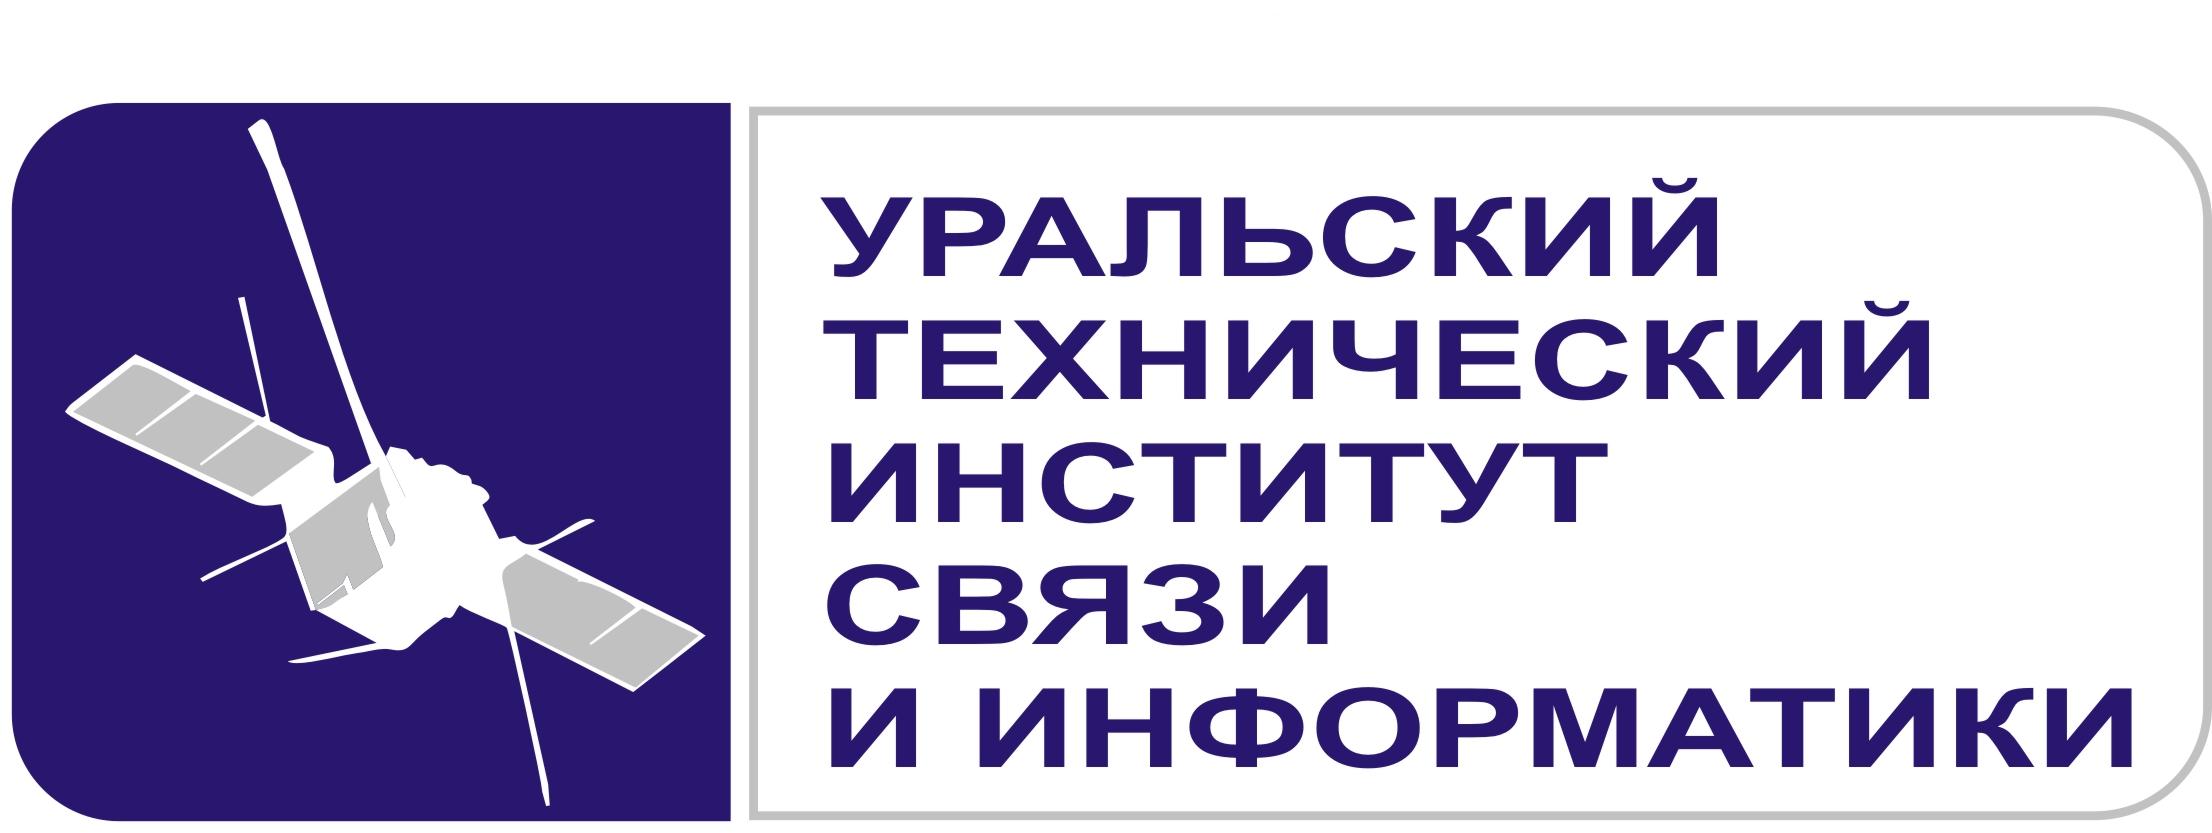 Логотип (Уральский технический институт связи и информатики)